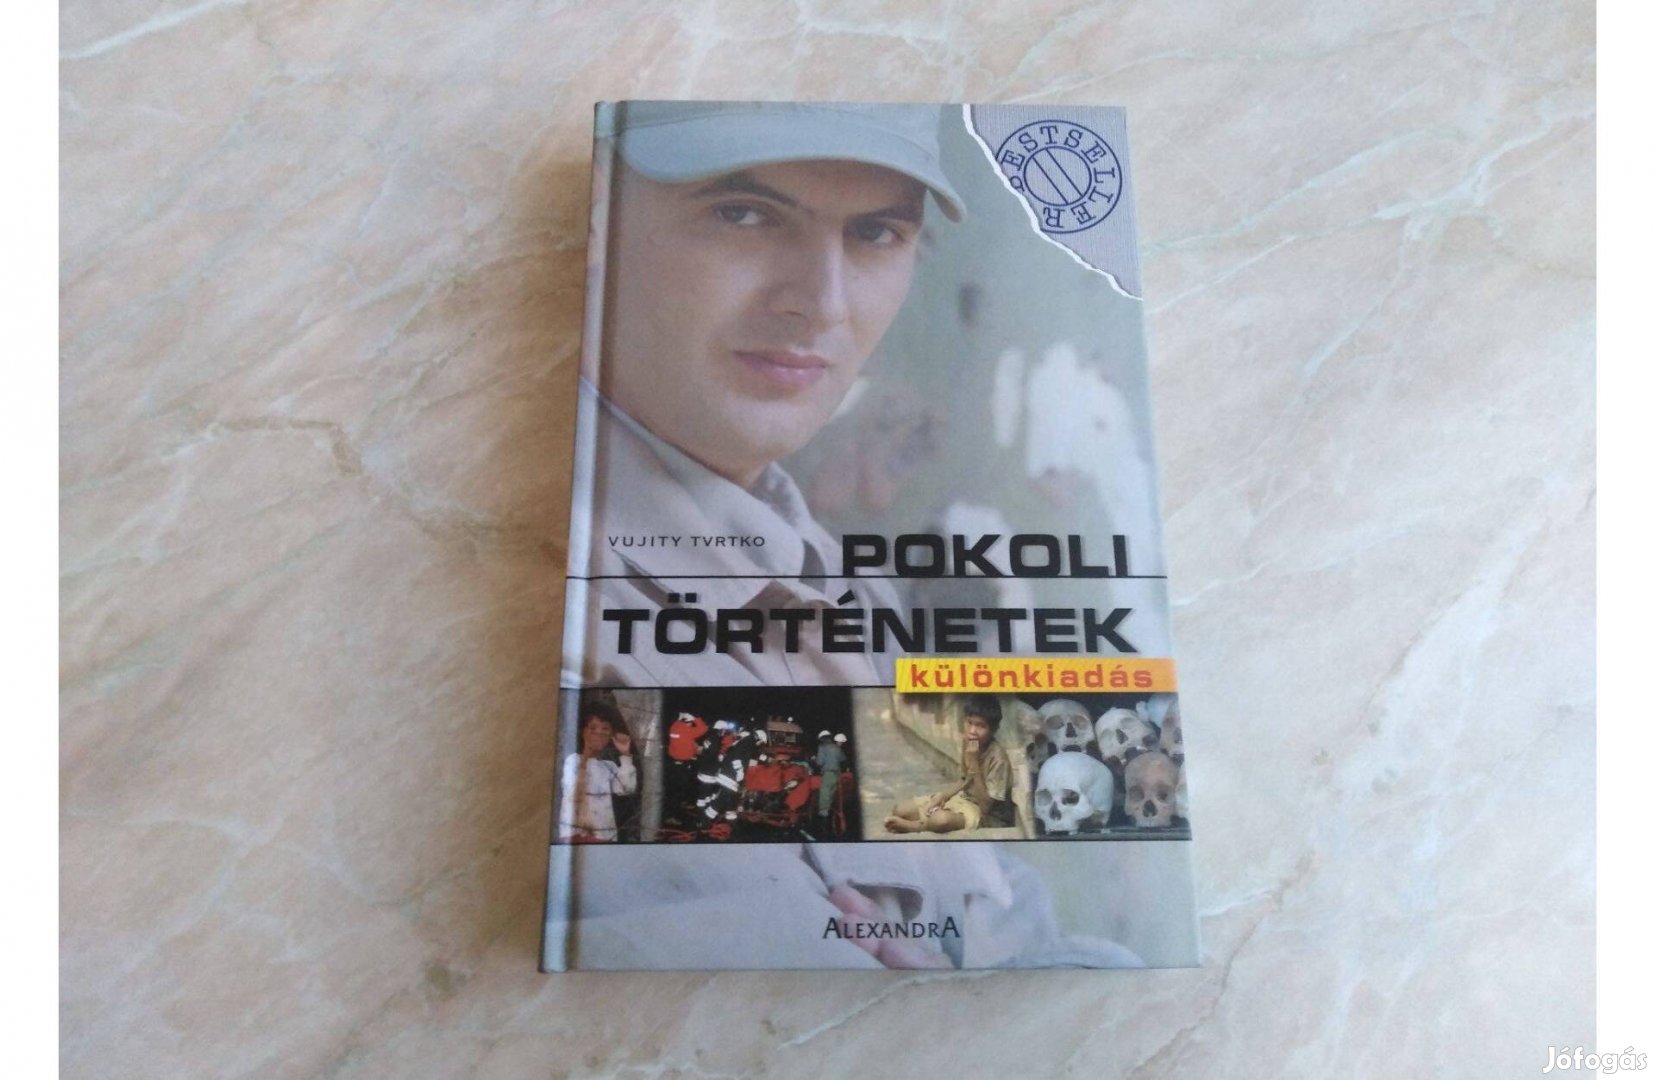 Pokoli történetek - Különkiadás - Vujity Tvrtko